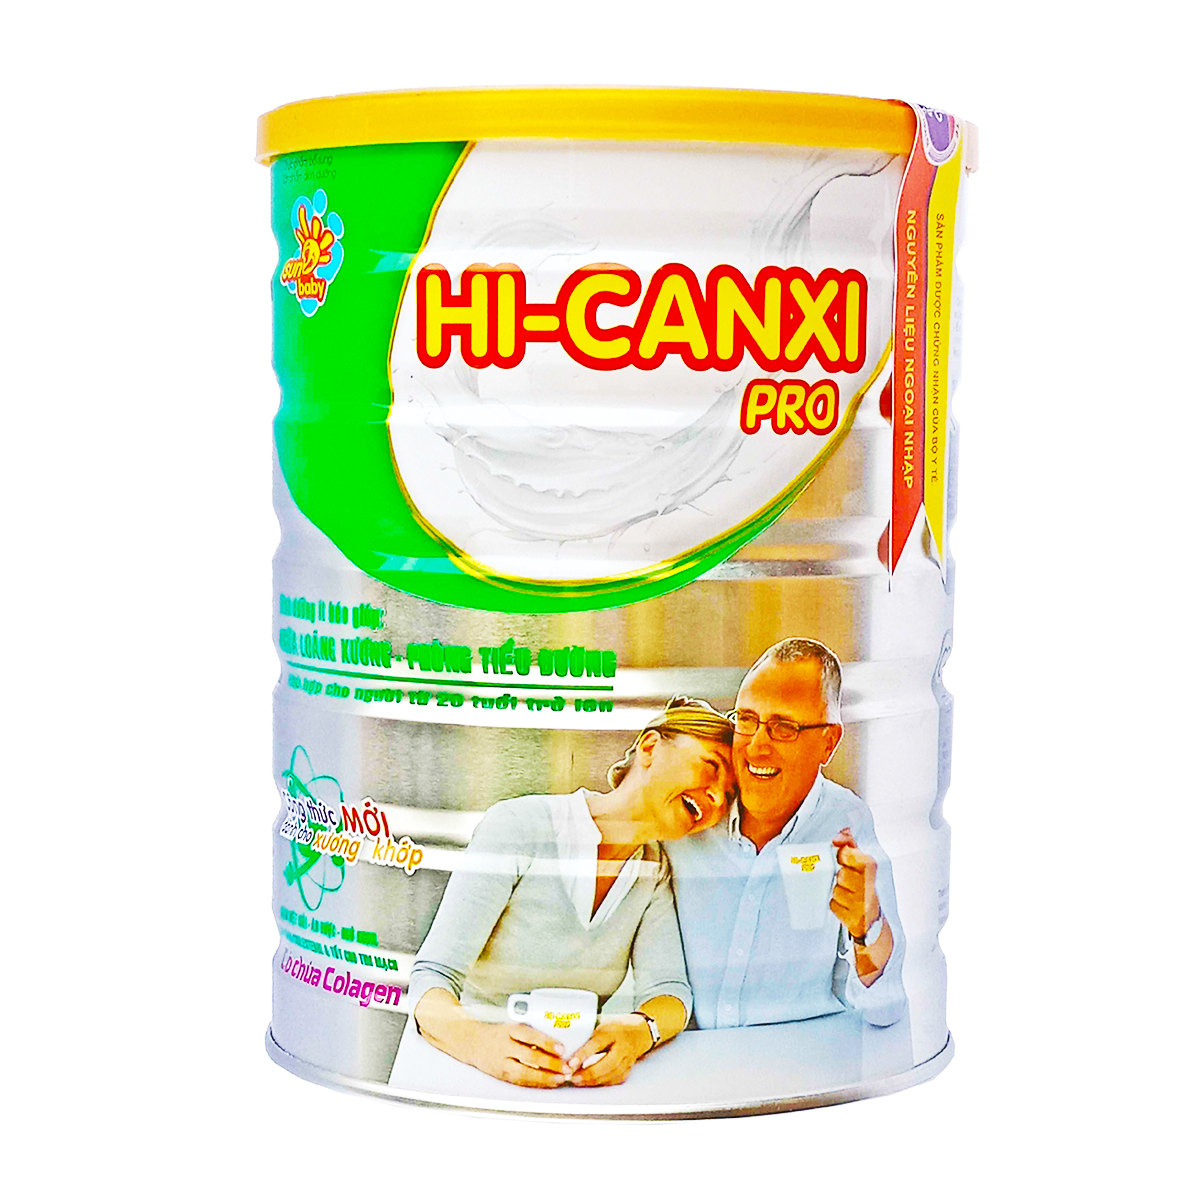 Sữa bột công thức dinh dưỡng HI-CANXI Pro cho người cao tuổi- Sunbaby SBTH2019